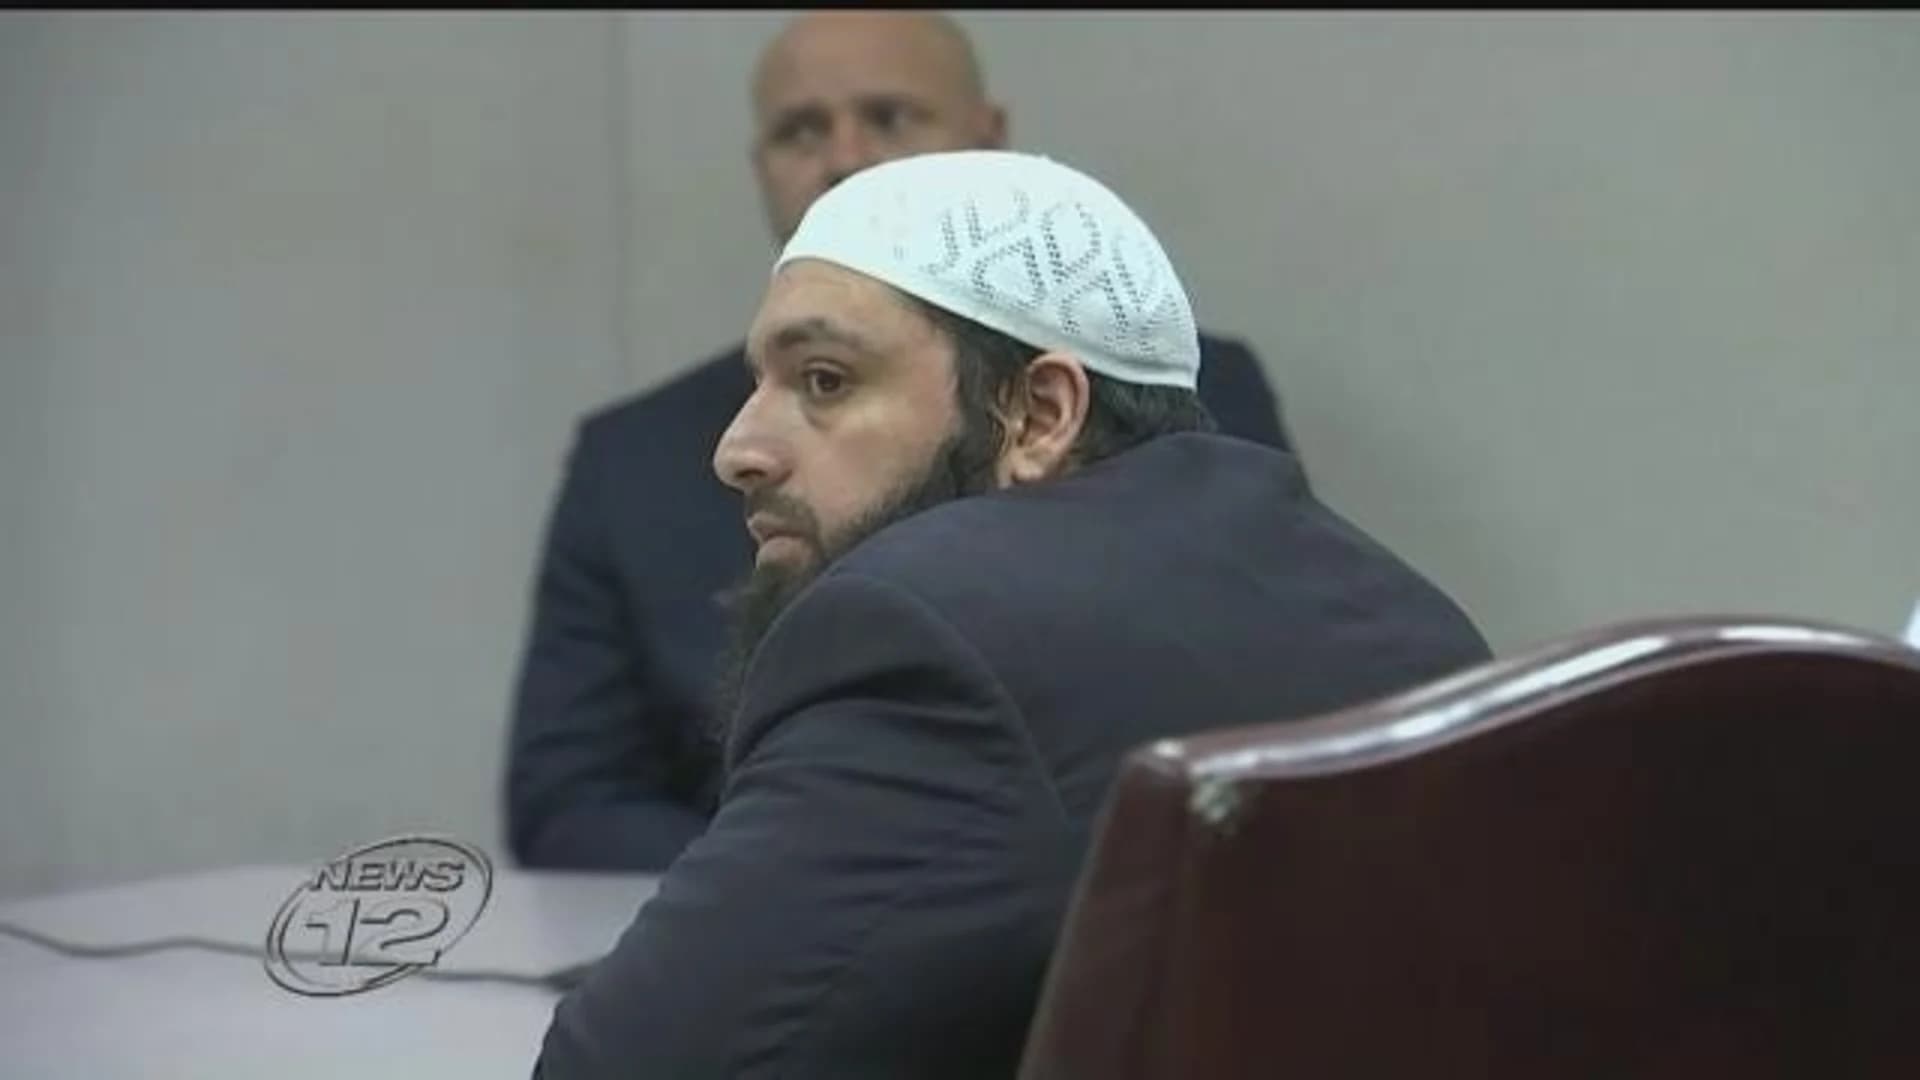 Appeals court upholds conviction of NY, NJ bomber Ahmad Rahimi